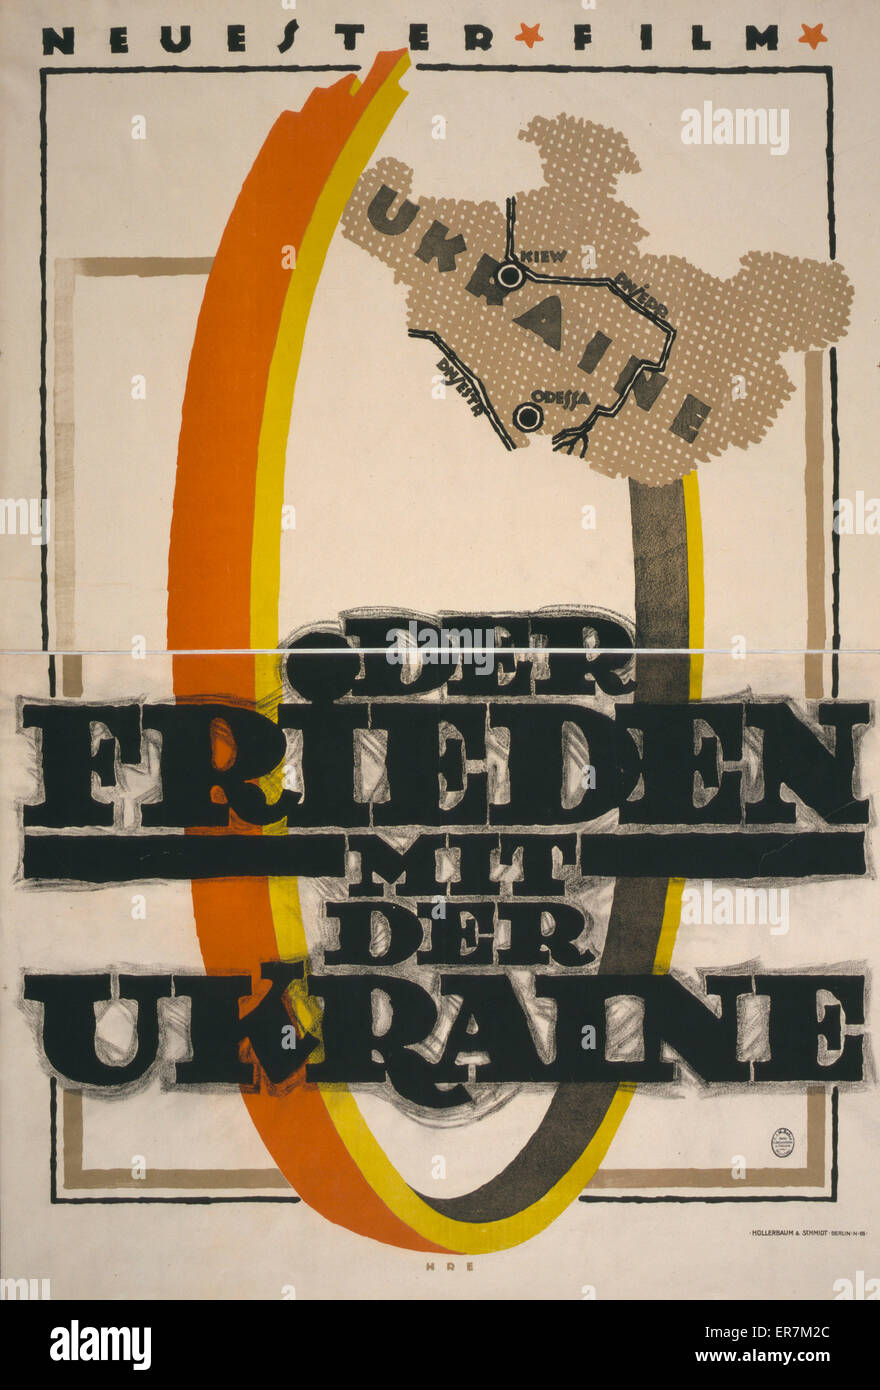 Der Frieden mit der ucrania. Neuester Film. Cartel muestra un mapa estilizado de Ucrania y parte de un gran anillo(?). El texto es el título de la película. La fecha de 1918. Foto de stock